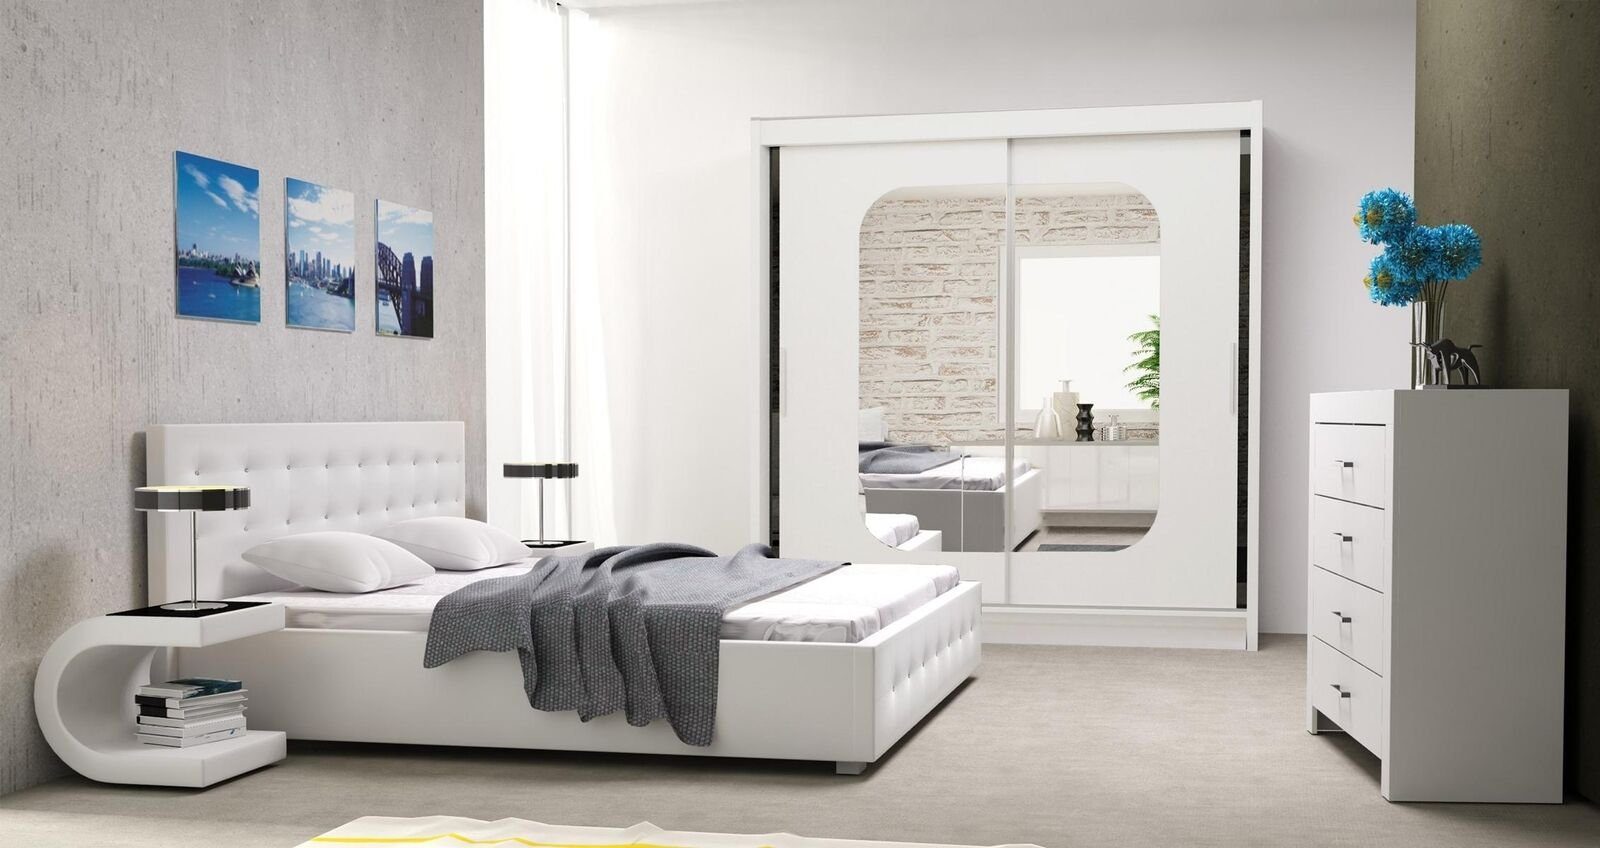 JVmoebel Bett, Bett Polster Design Luxus Doppel Betten Weiß 160x200cm